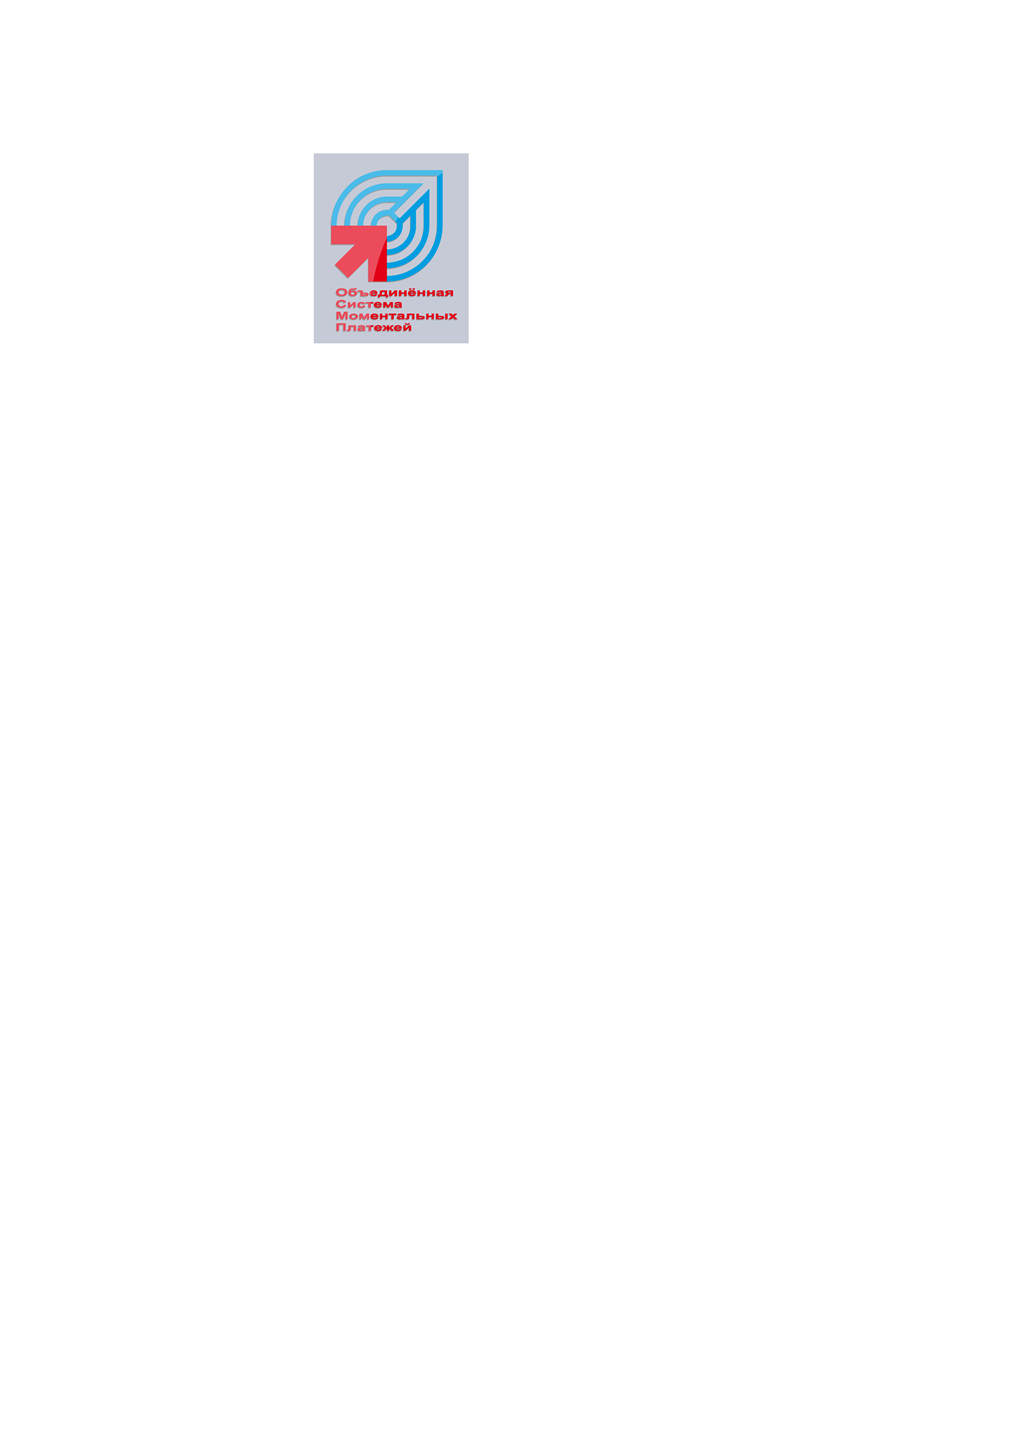 OSMP logotype, transparent .png, medium, large